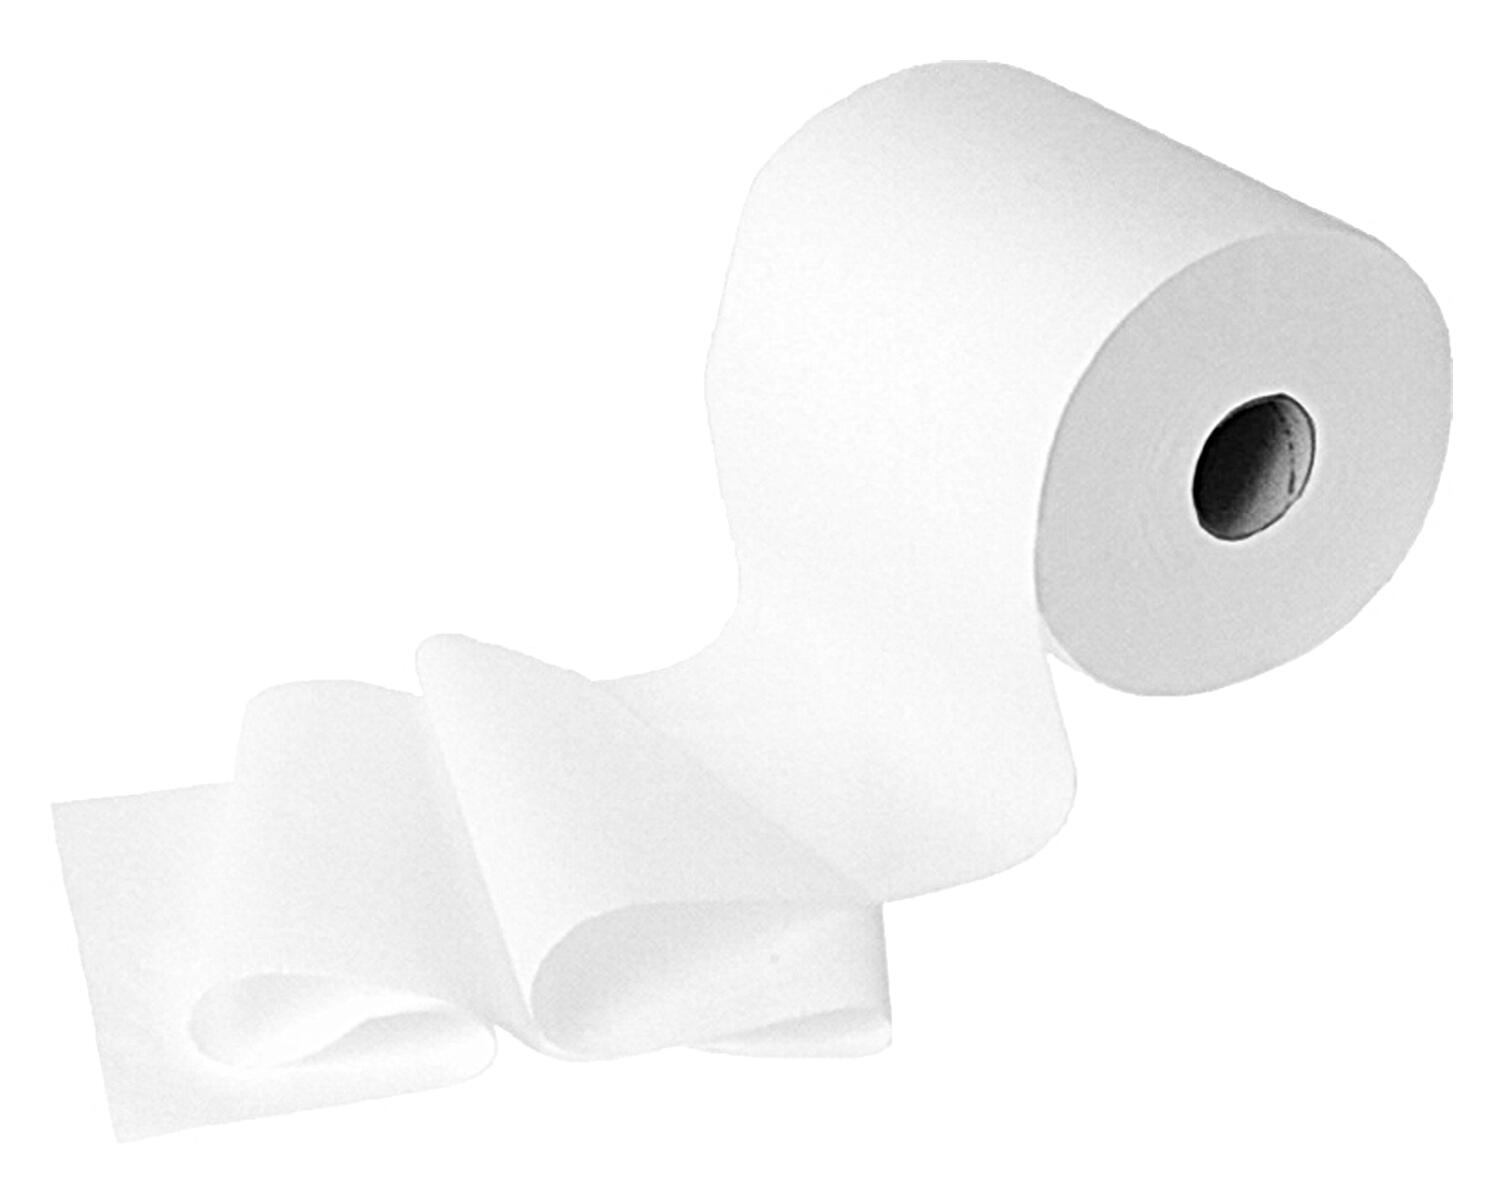 Handtuchrolle Tissue, 100% Zellstoff 3-lagig 20 cm x 100 m, wei, 6 Stk.